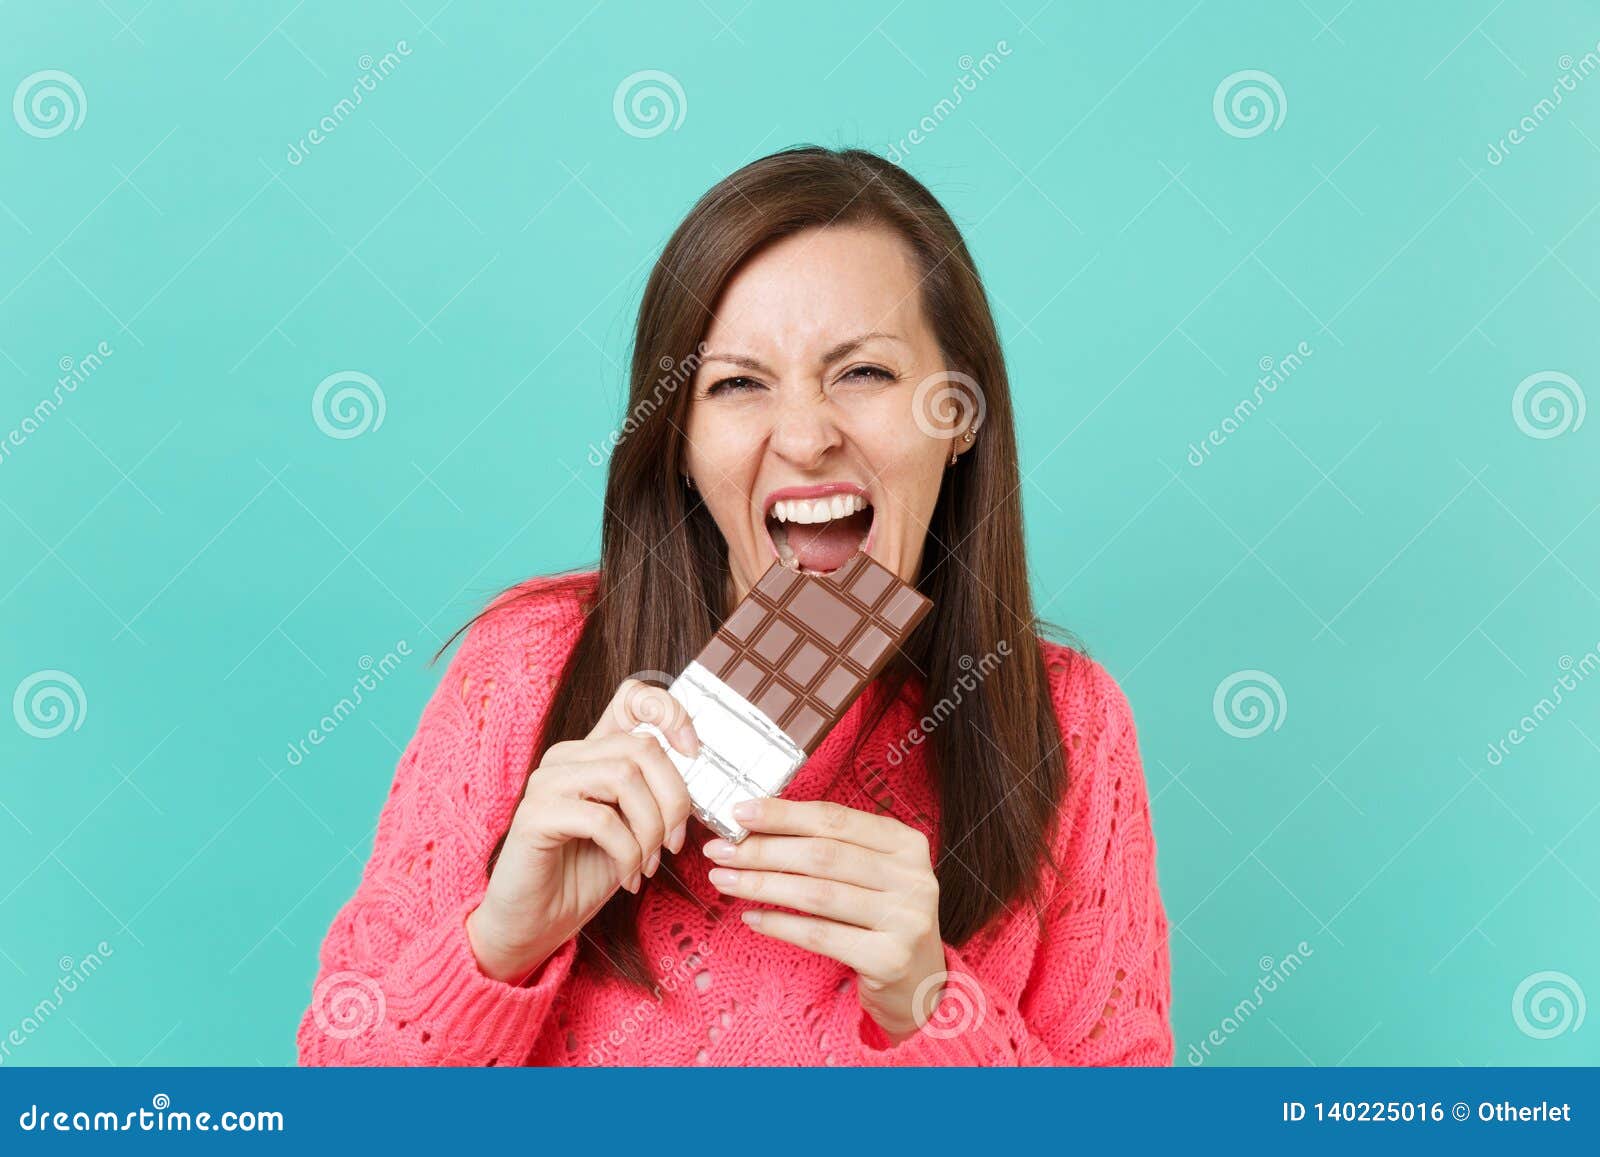 Дядя тянет руку в руке шоколадка. Девушка держит шоколад в руке. Девушка держит в руке батончик. Девушка держит в руках шоколадку. Рука держит батончик.